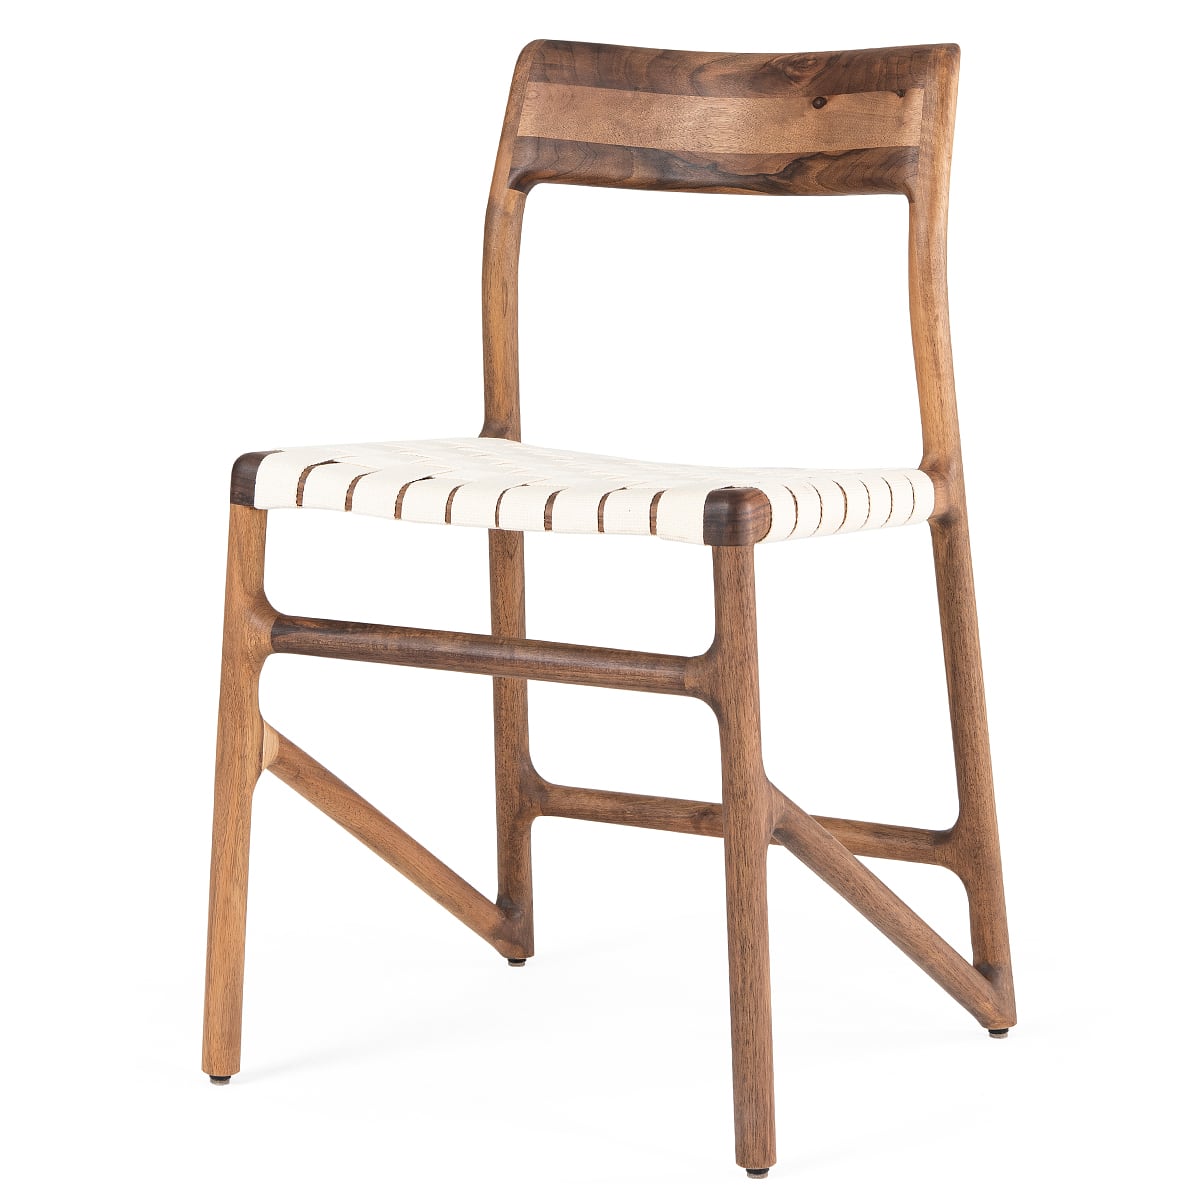 FAWN - الكرسي - خشب الجوز الصلب، طلاء طبيعي بالزيت الطبيعي، نسيج قطني أبيض